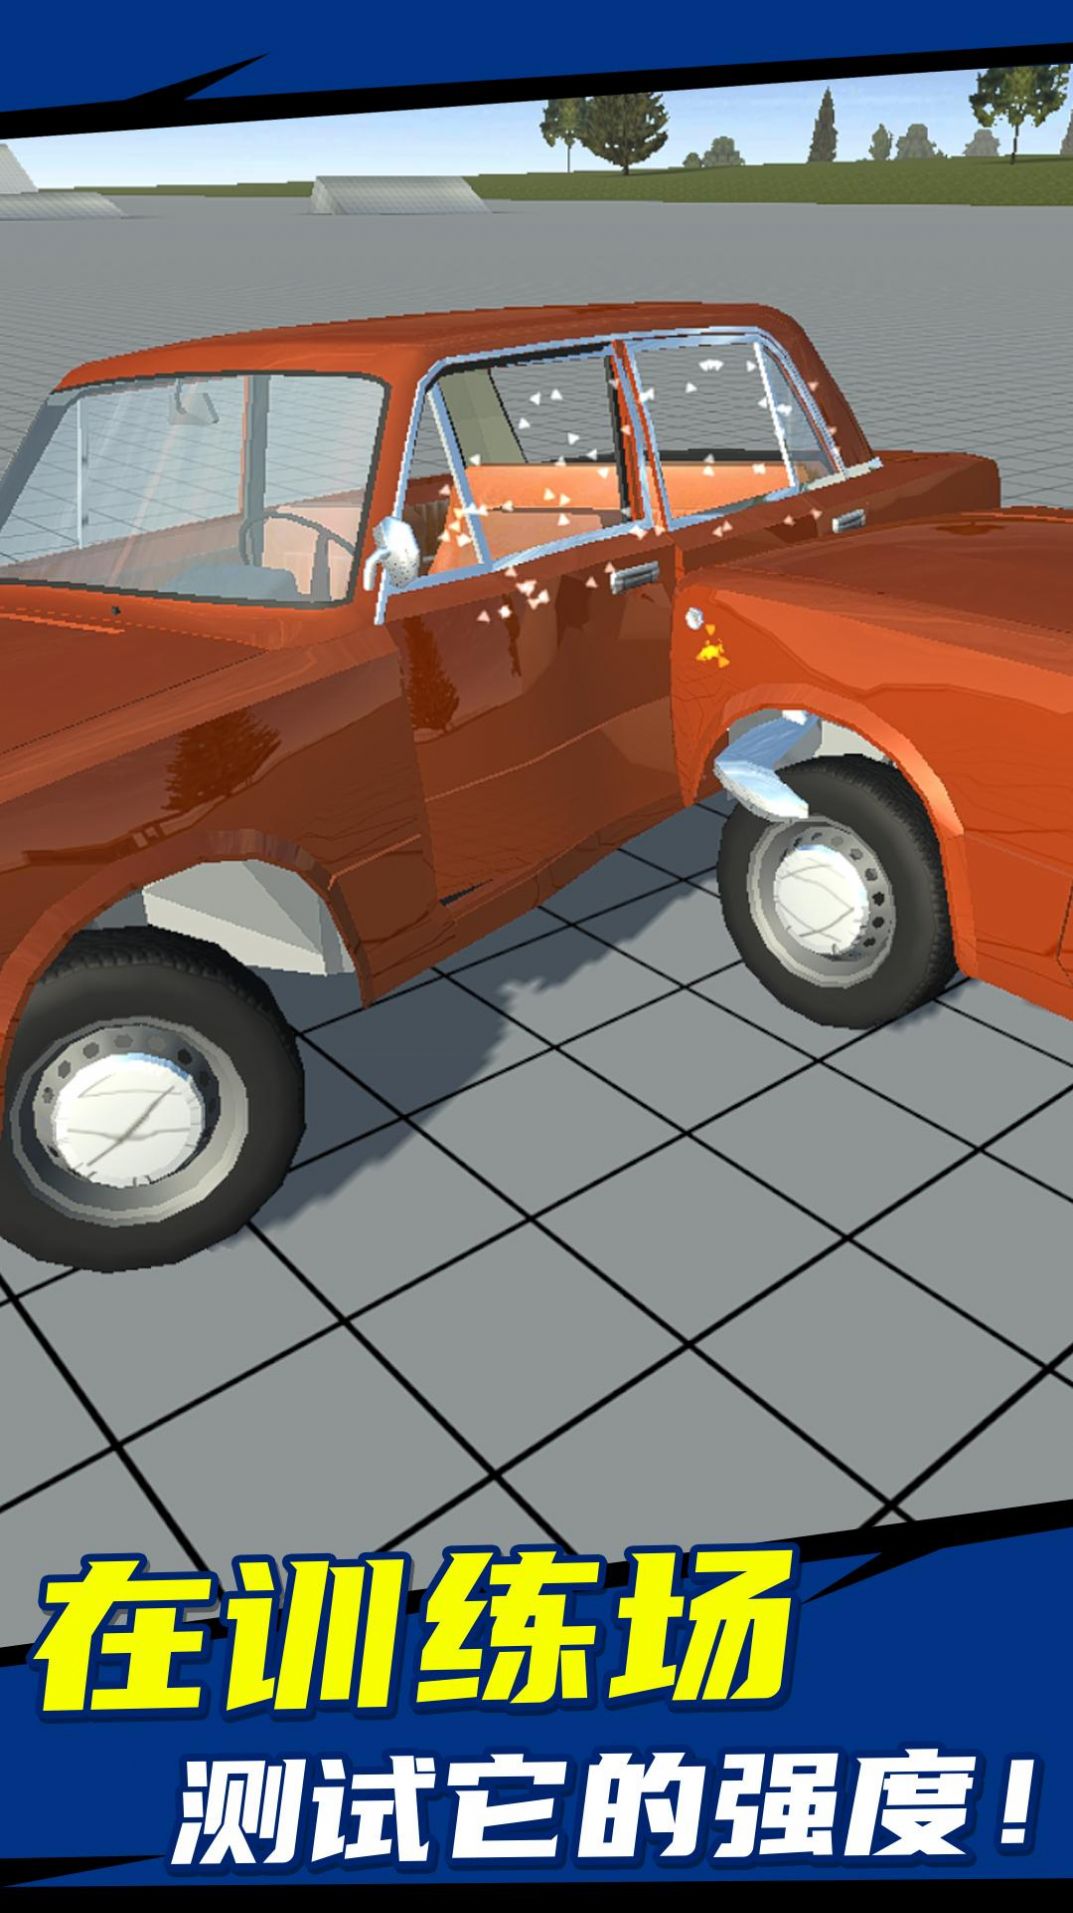 简单车祸模拟游戏1